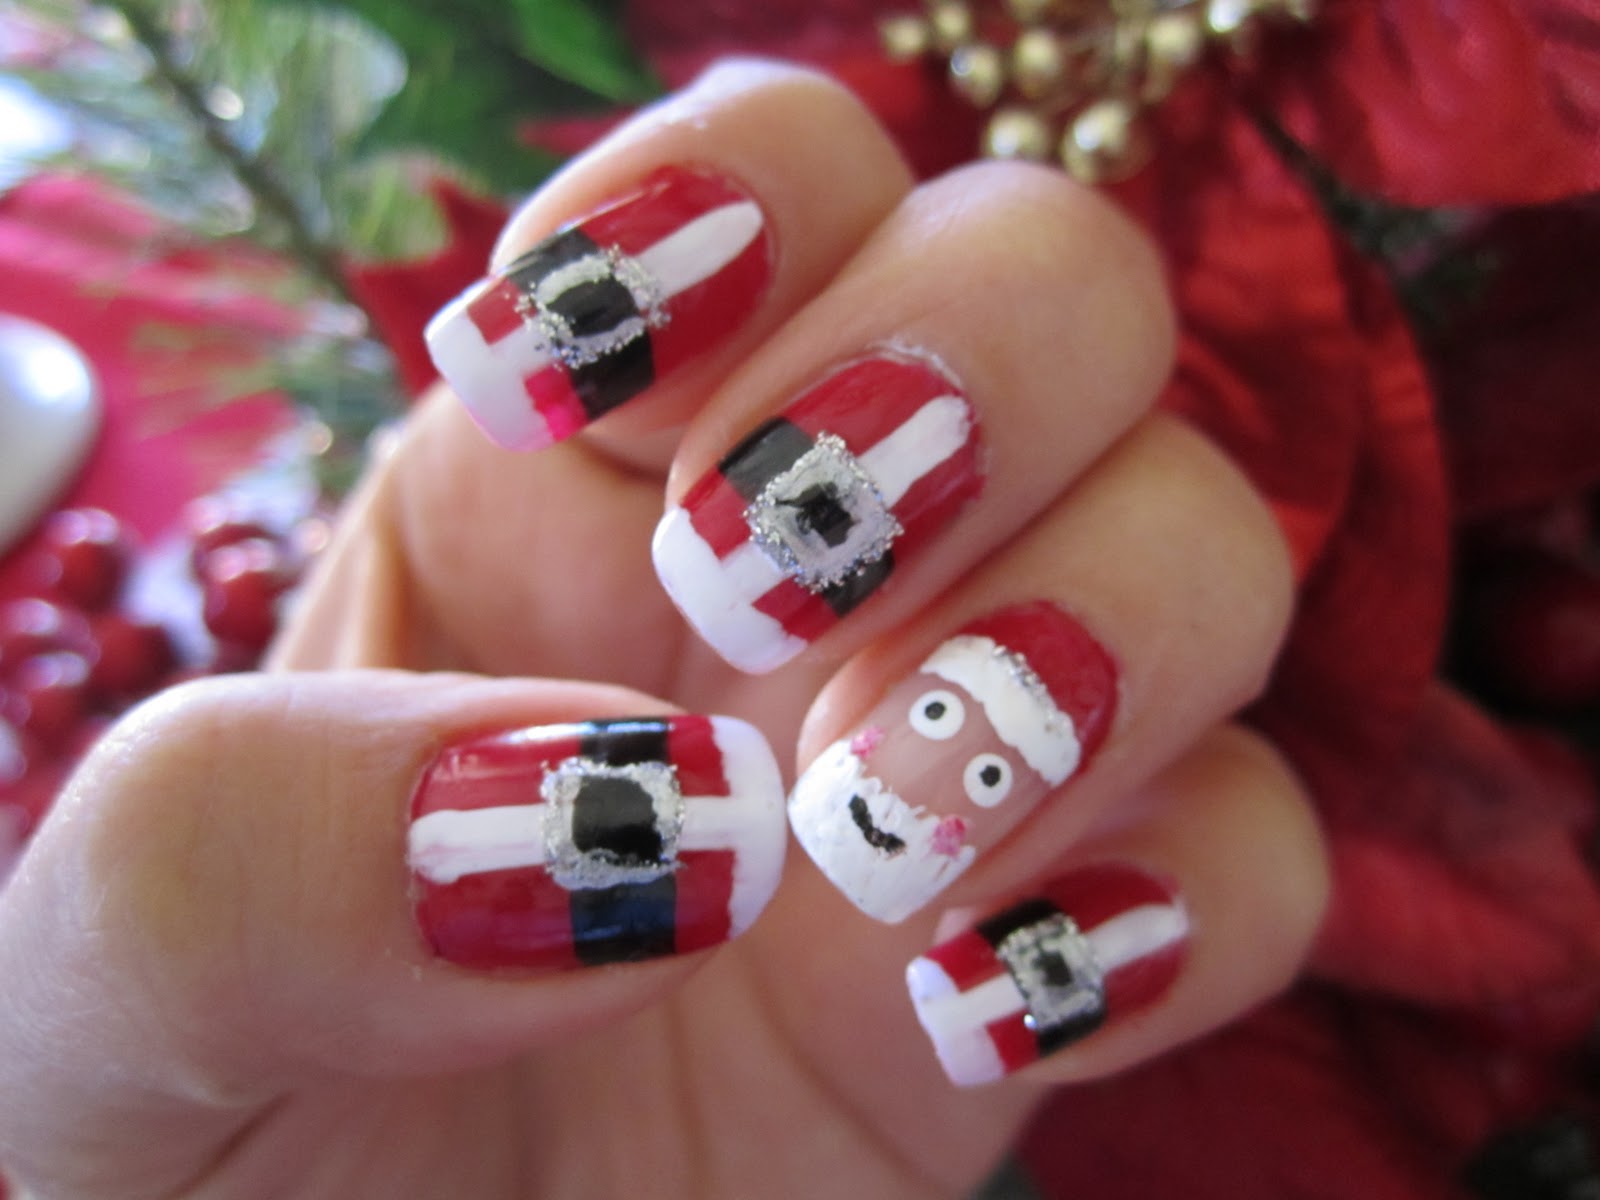 Blanca1018♥: Christmas Nails #4 - Santa!